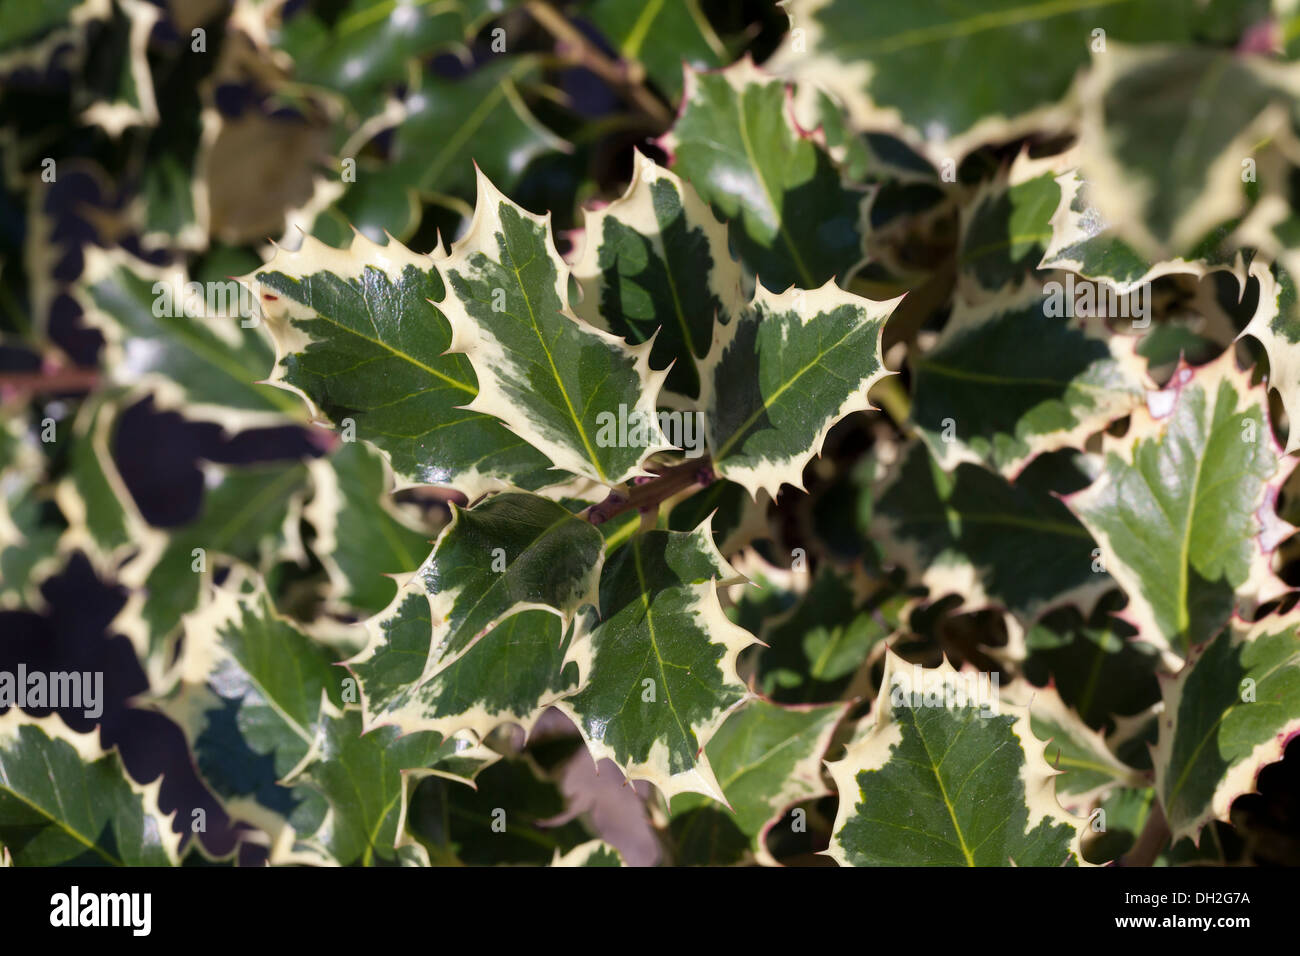 Variegated English Holly (Ilex aquifolium - Argentea Marginata) leaves Stock Photo